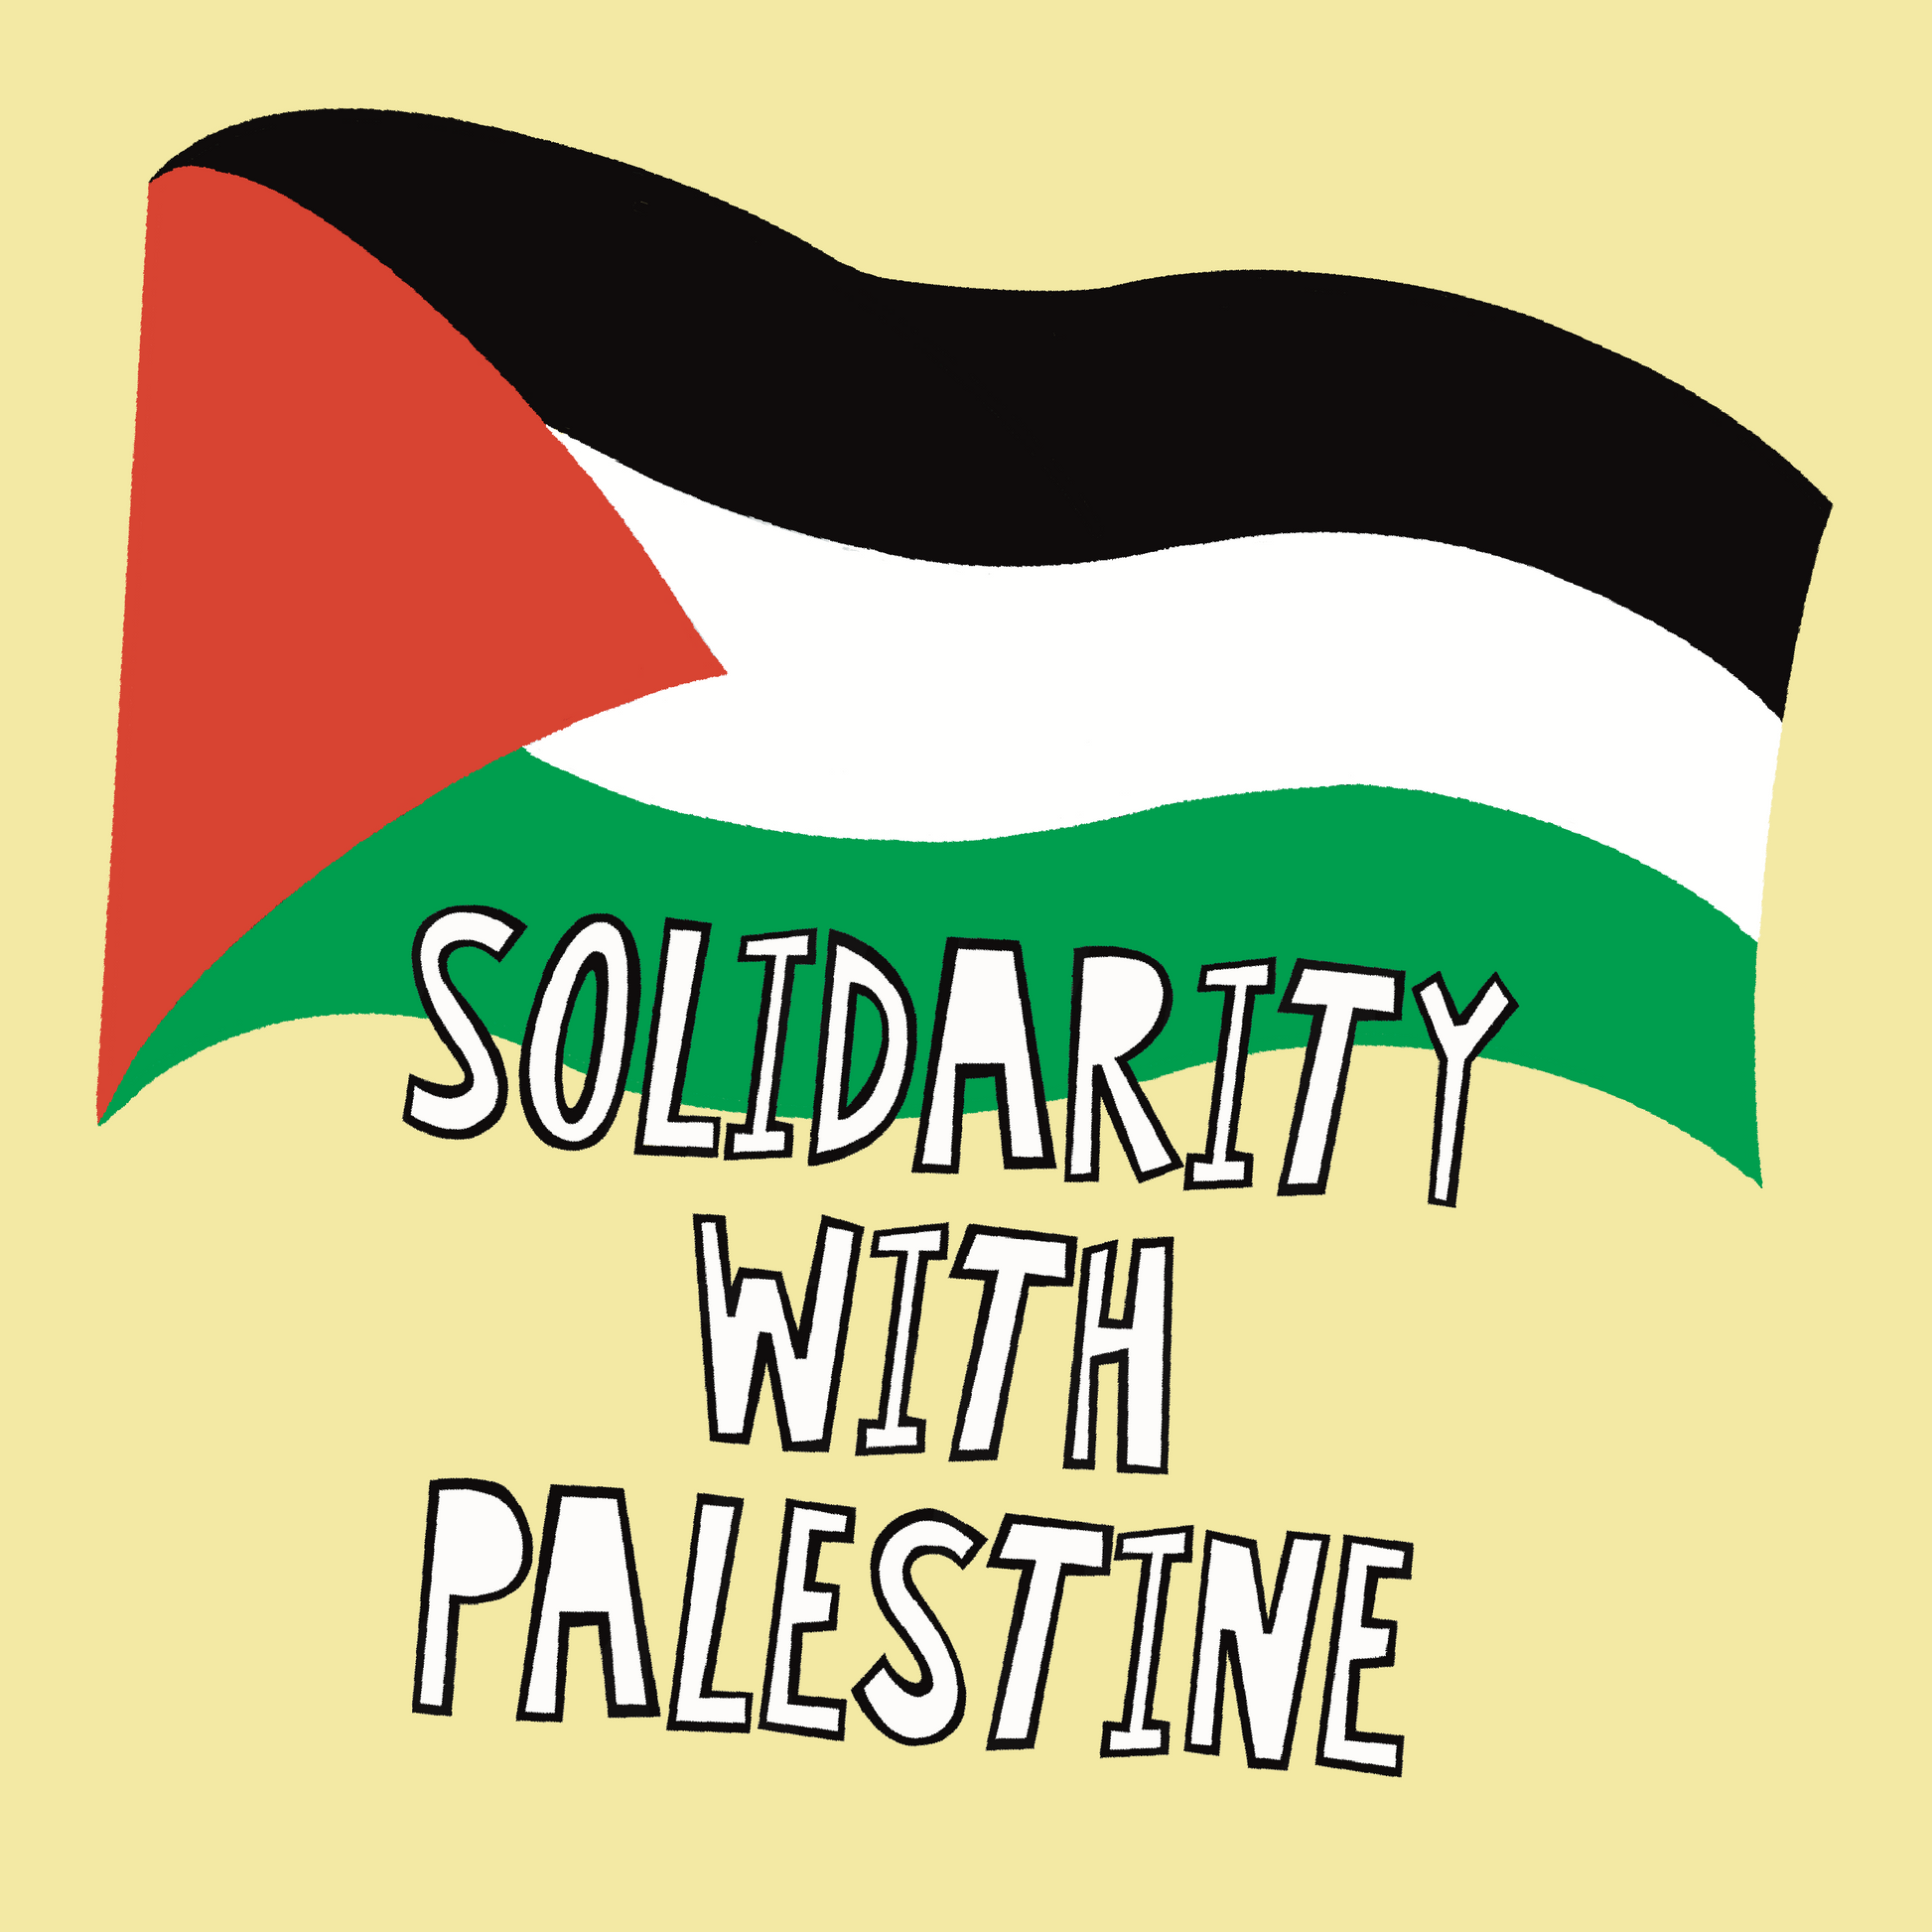 Stickers - Palestine - Palestine